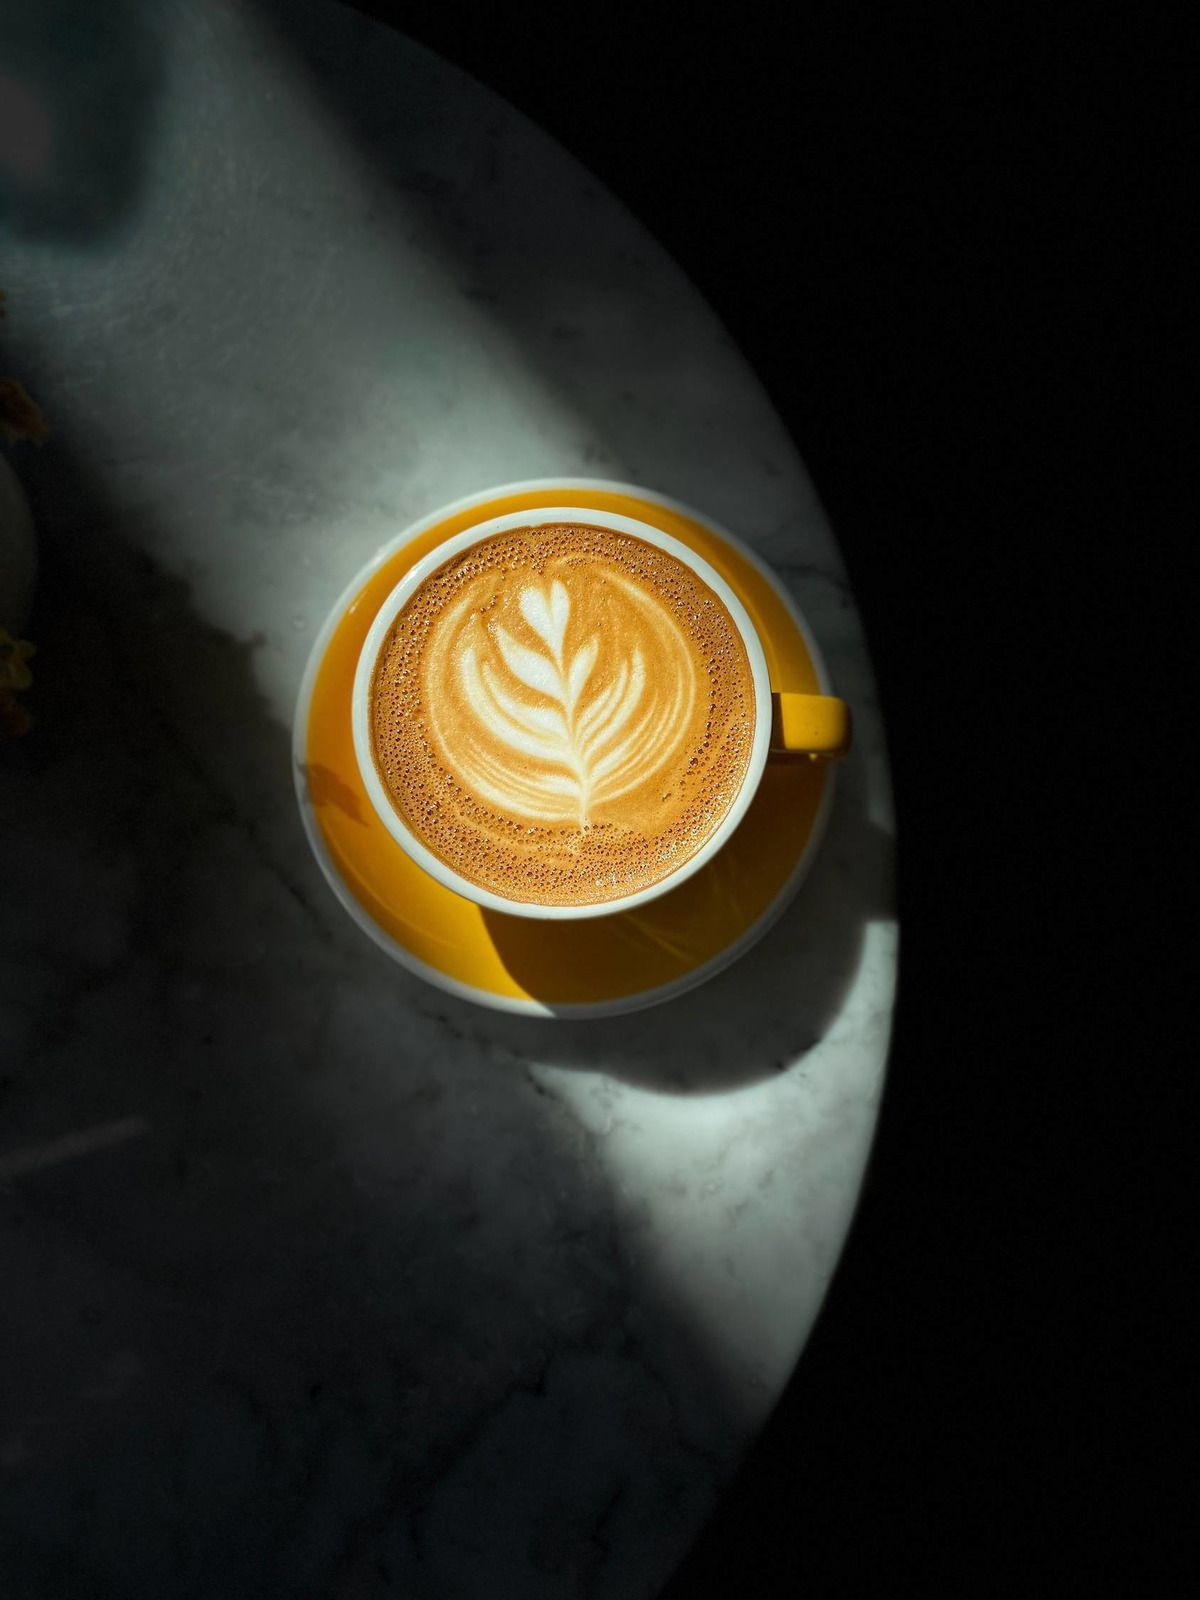 Австралійські вчені запропонували варити каву ультразвуком. Такий спосіб приготування якісно змінює напій в кращу сторону.